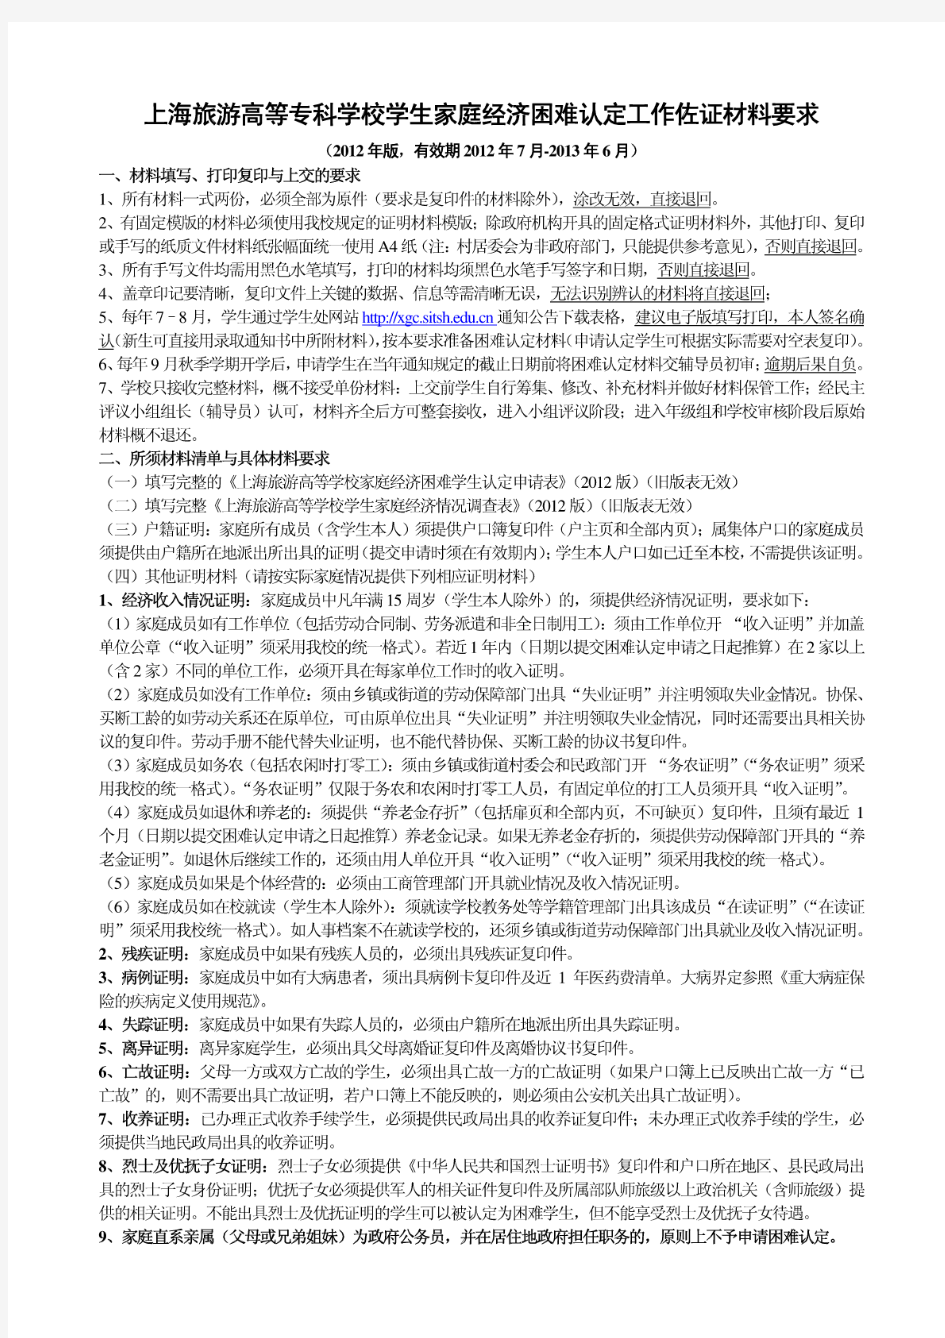 上海旅游高等专科学校学生家庭经济困难认定工作佐证材料要求